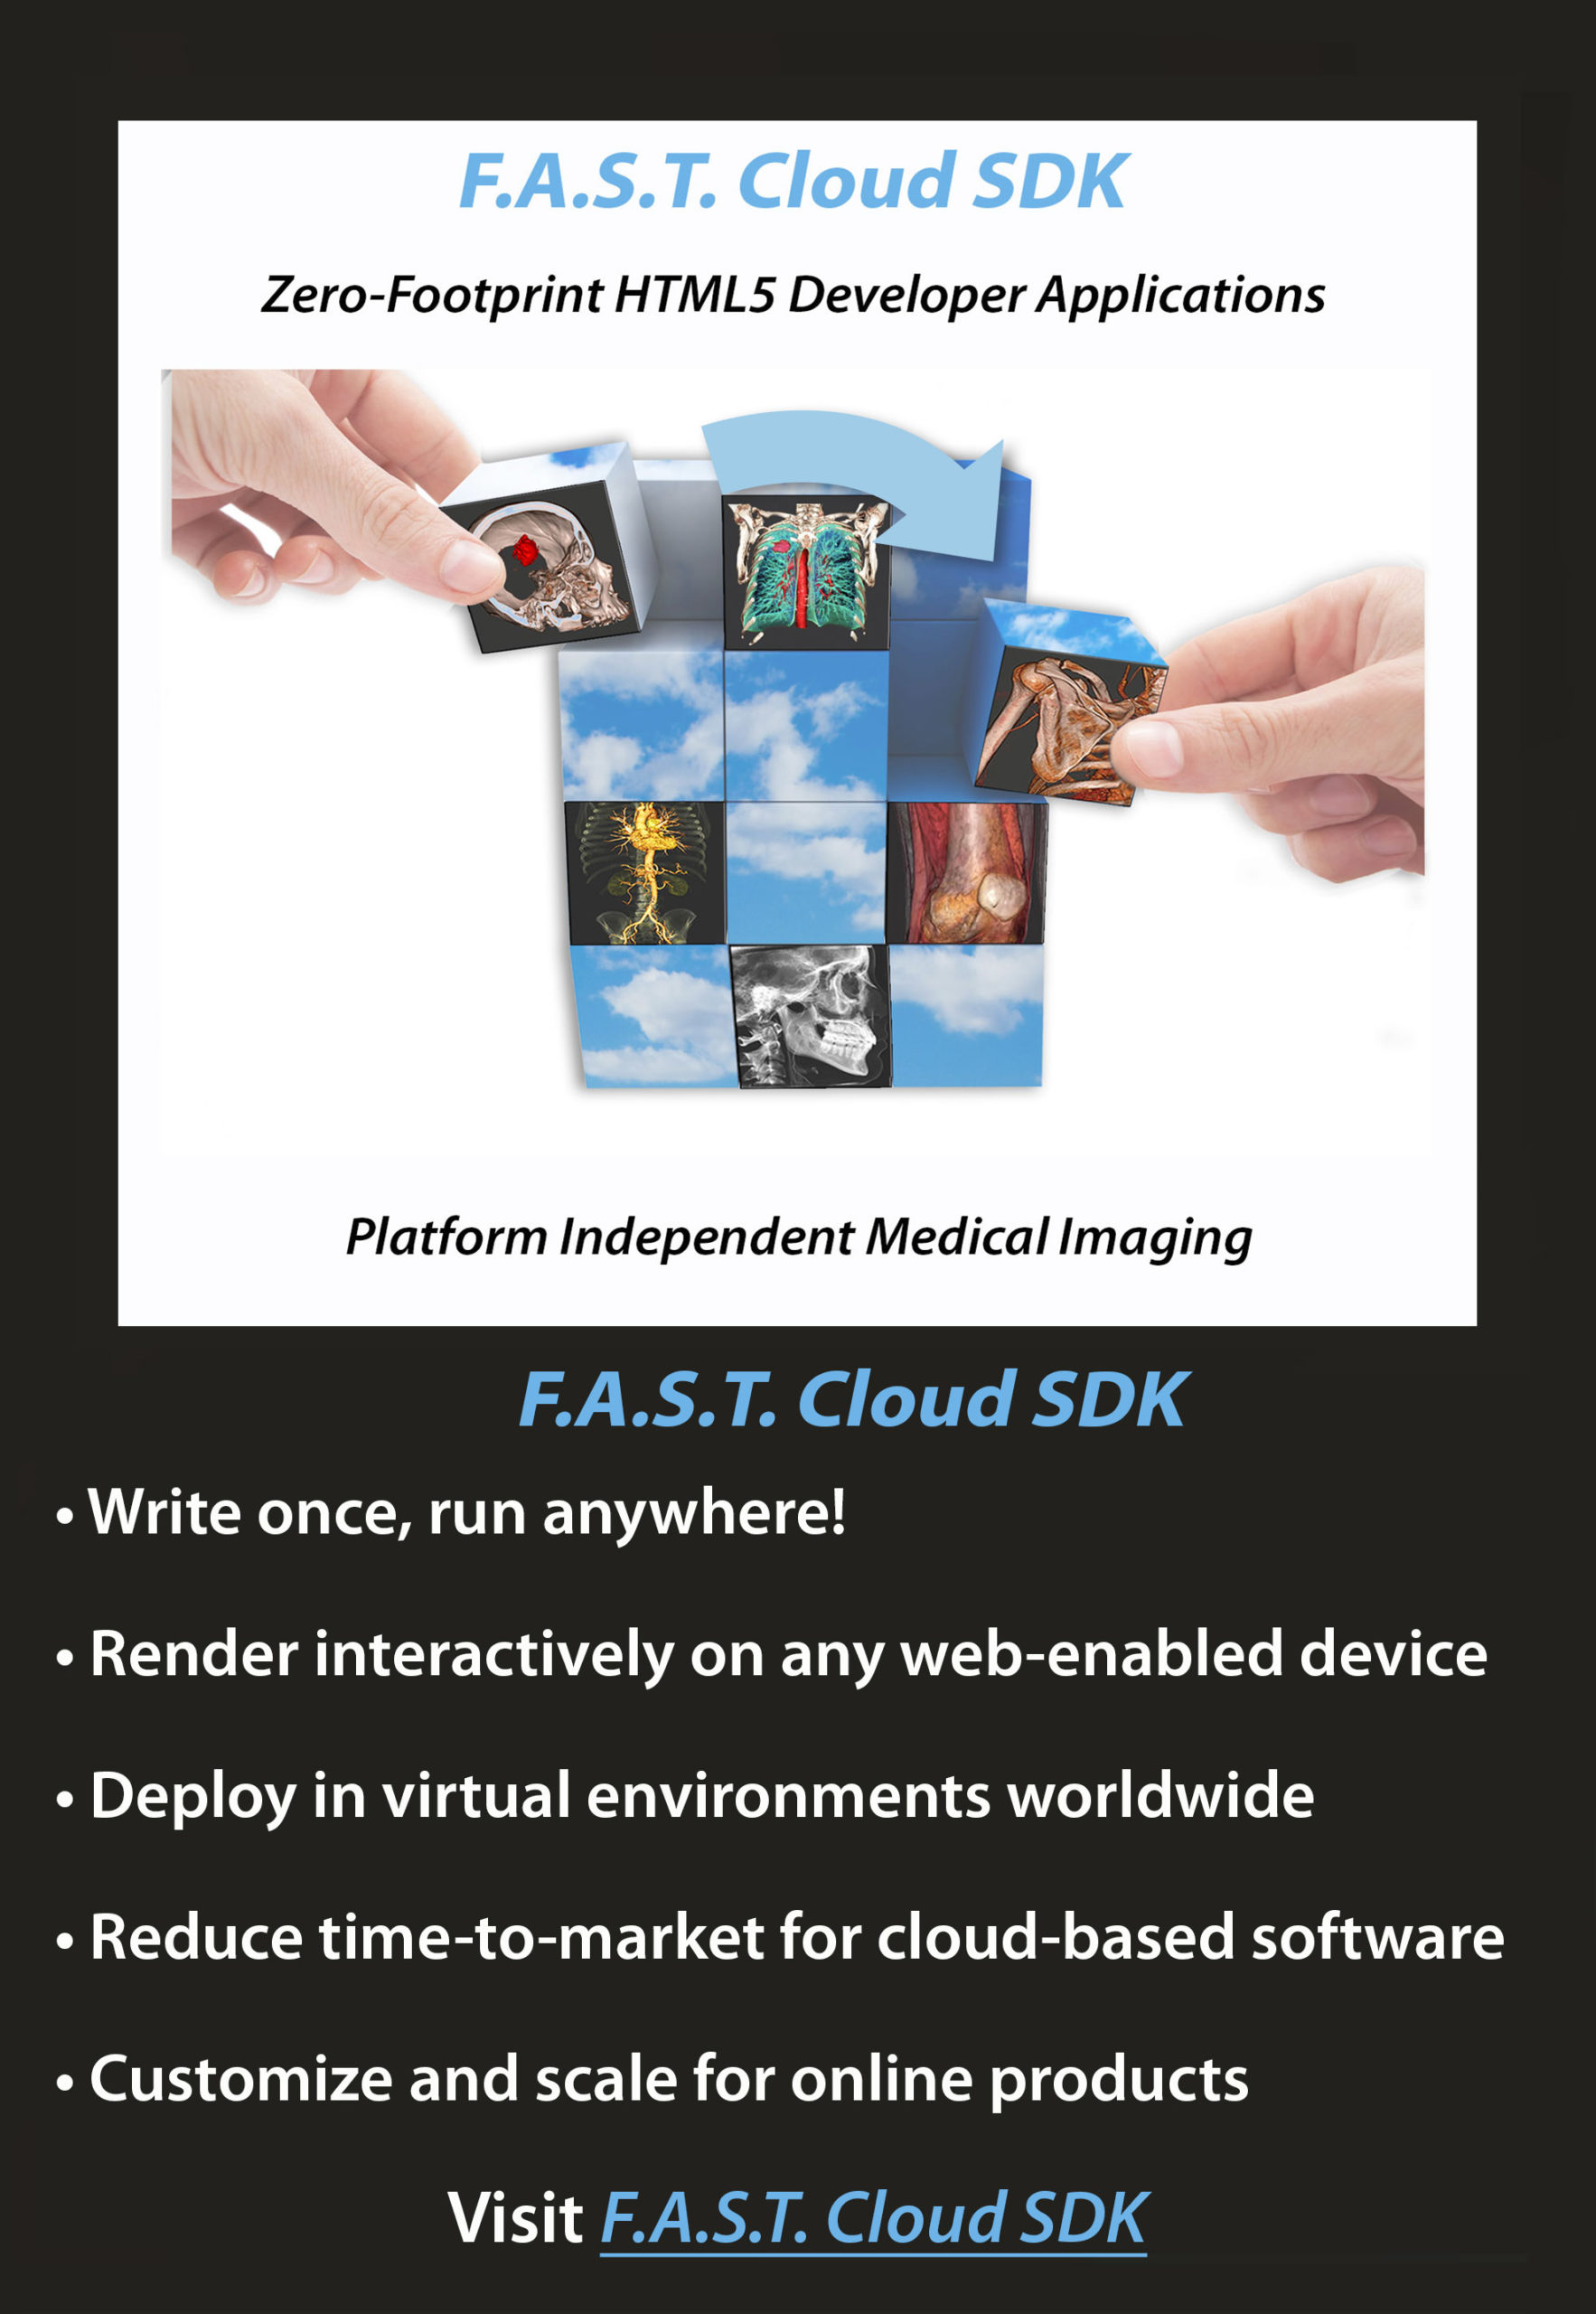 F.A.S.T. Cloud SDK